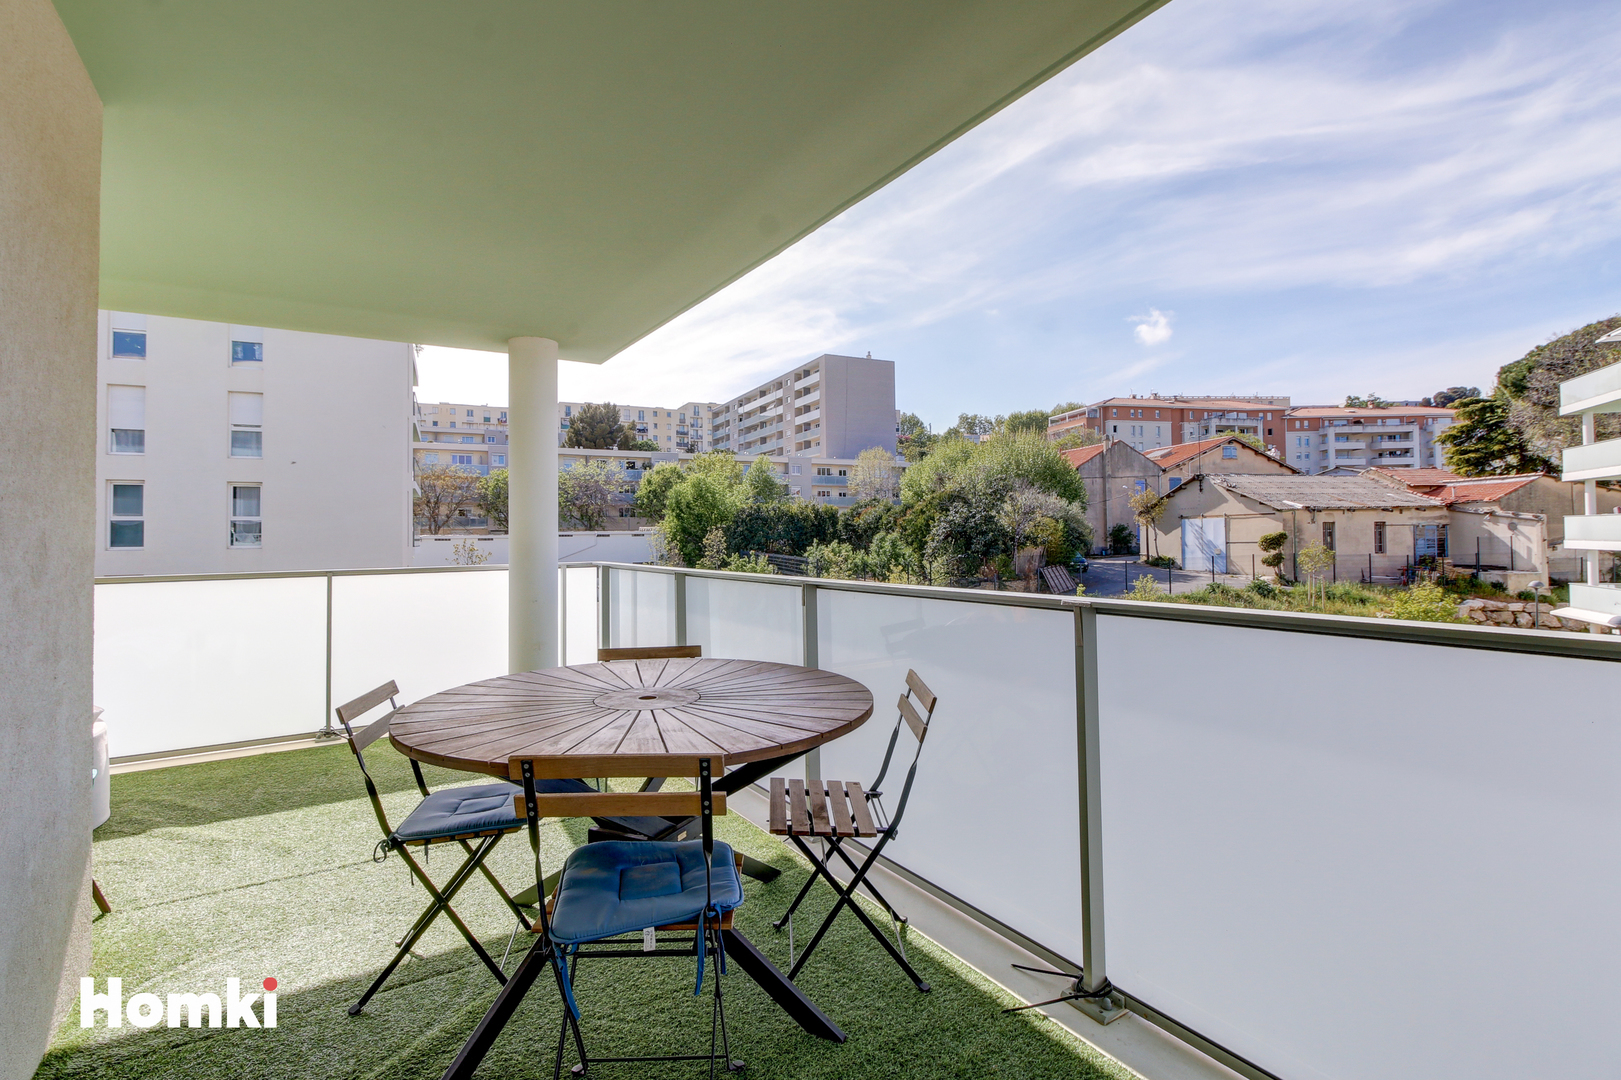 Homki - Vente Appartement  de 83.0 m² à Marseille 13012